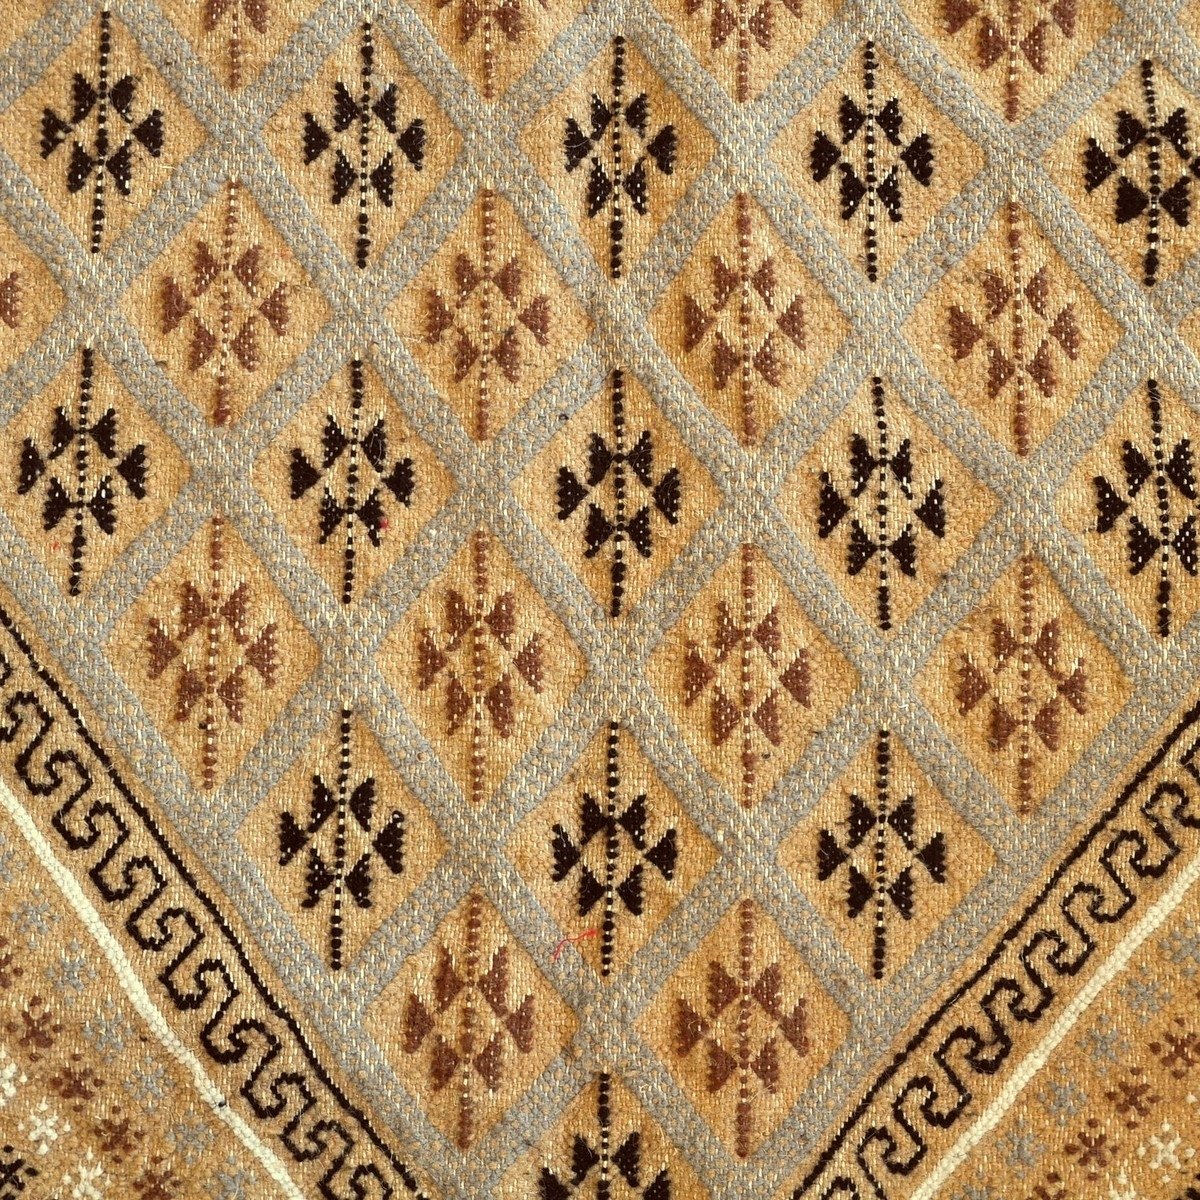 Berber tapijt Groot Tapijt Margoum Zouhour 197x295 Beige (Handgeweven, Wol, Tunesië) Tunesisch Margoum Tapijt uit de stad Kairou